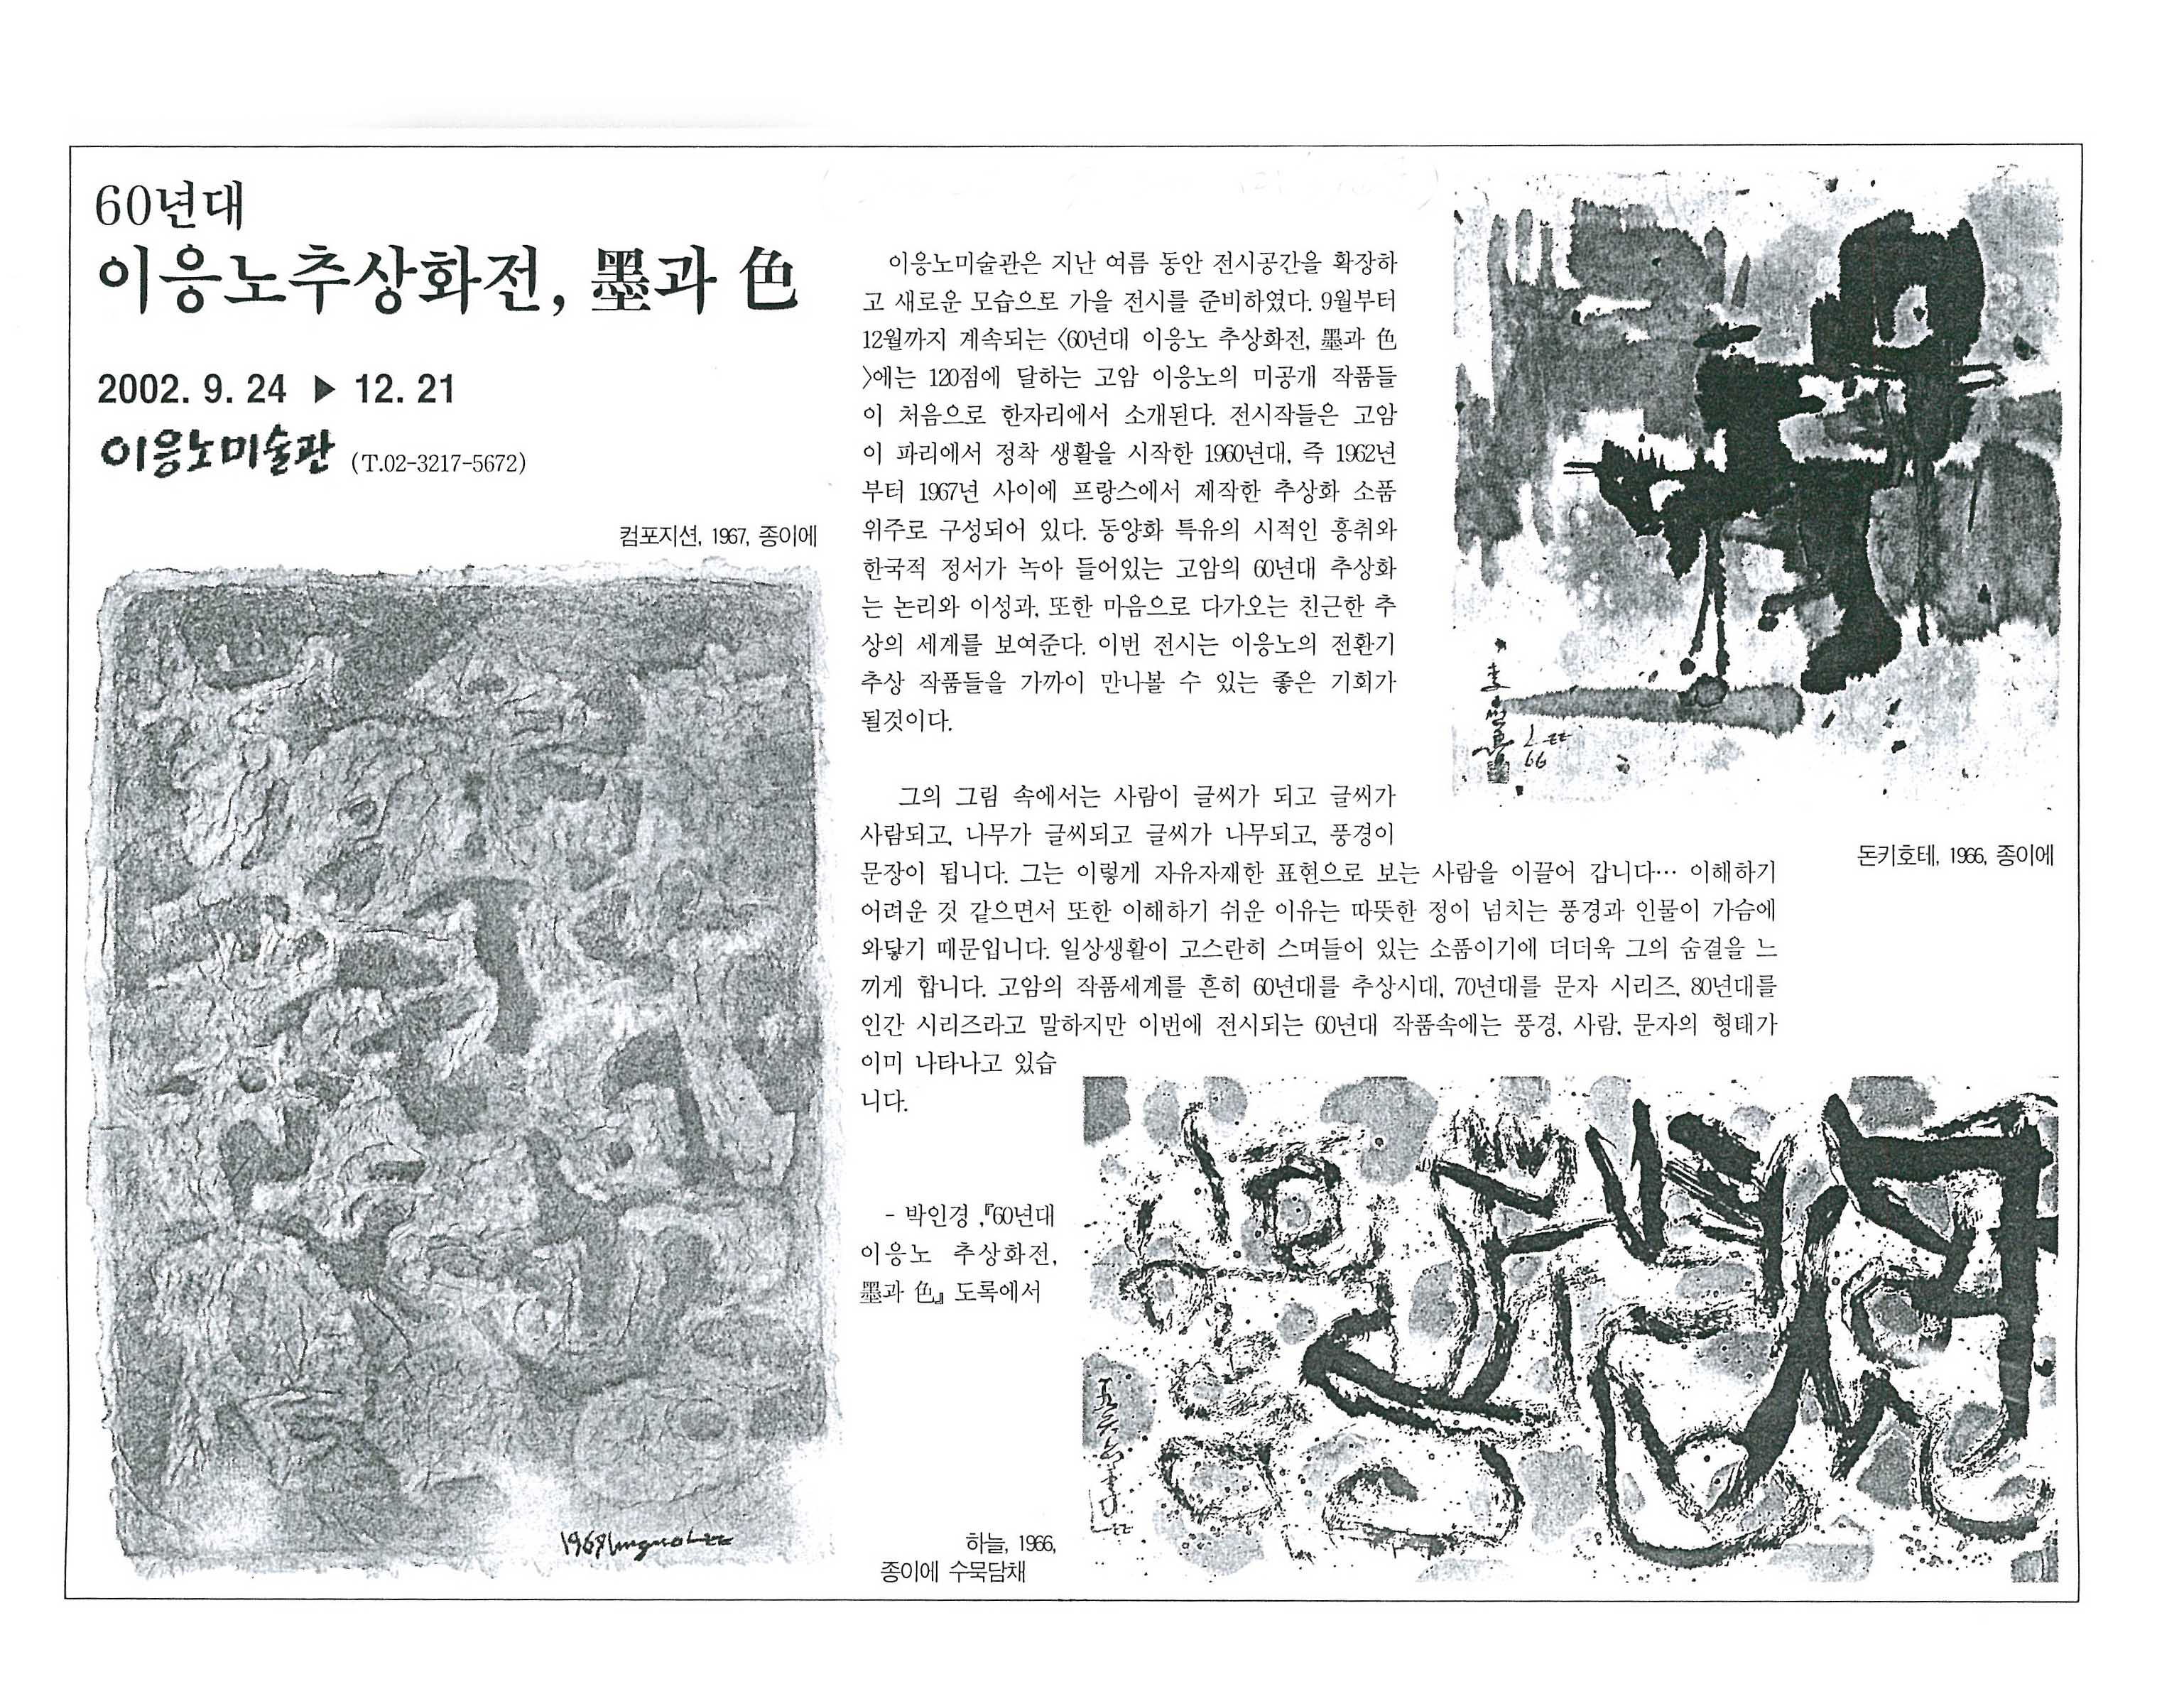 「60년대 이응노 추상화전, 묵(墨)과 색(色)」, 『미술신문』